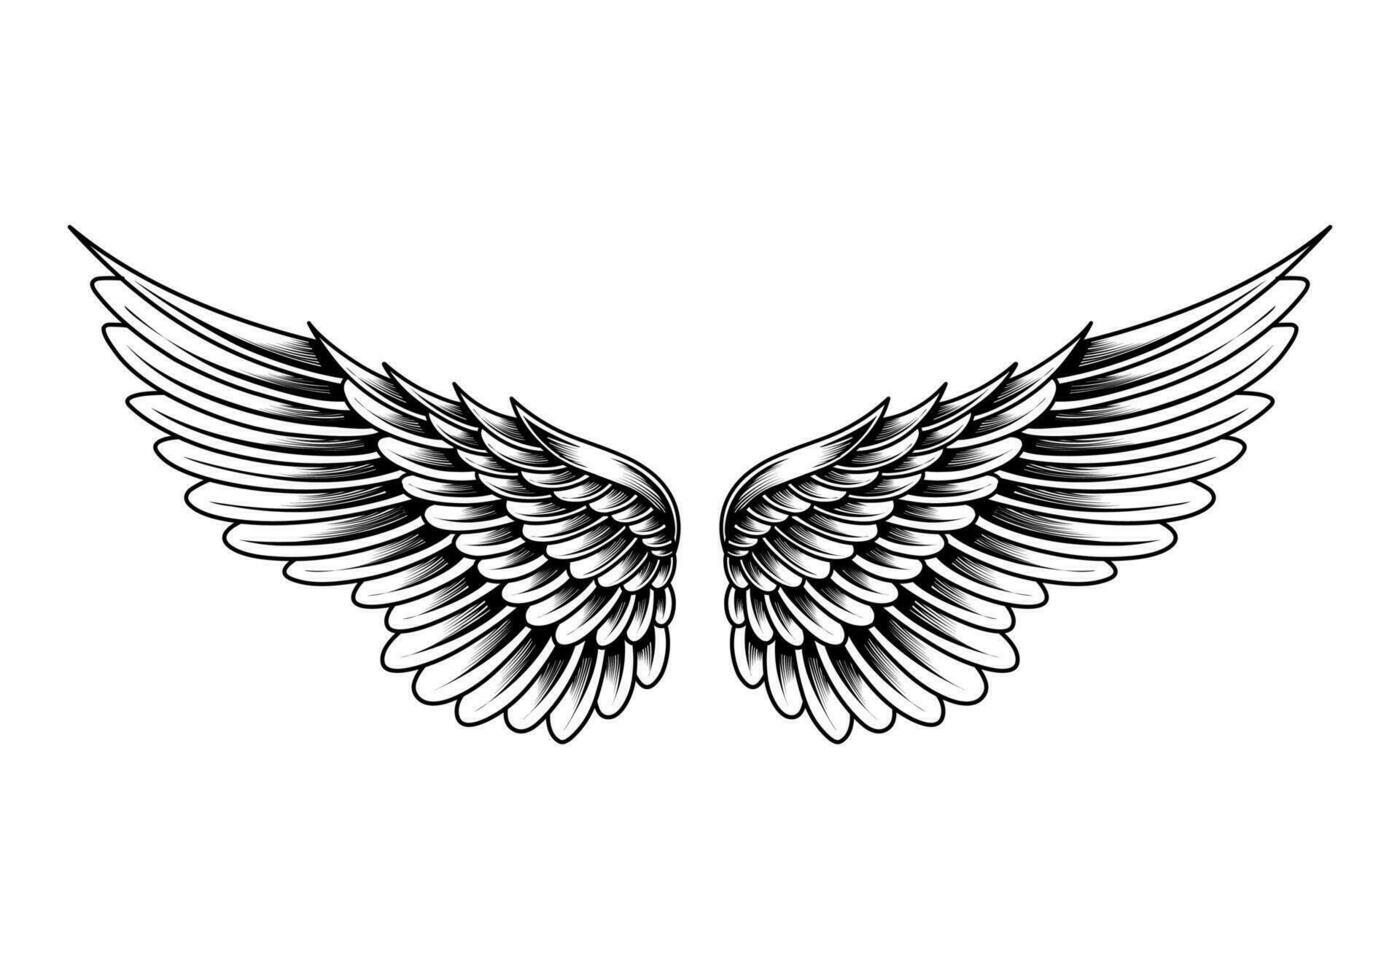 free vector vintage angel wings tattoo